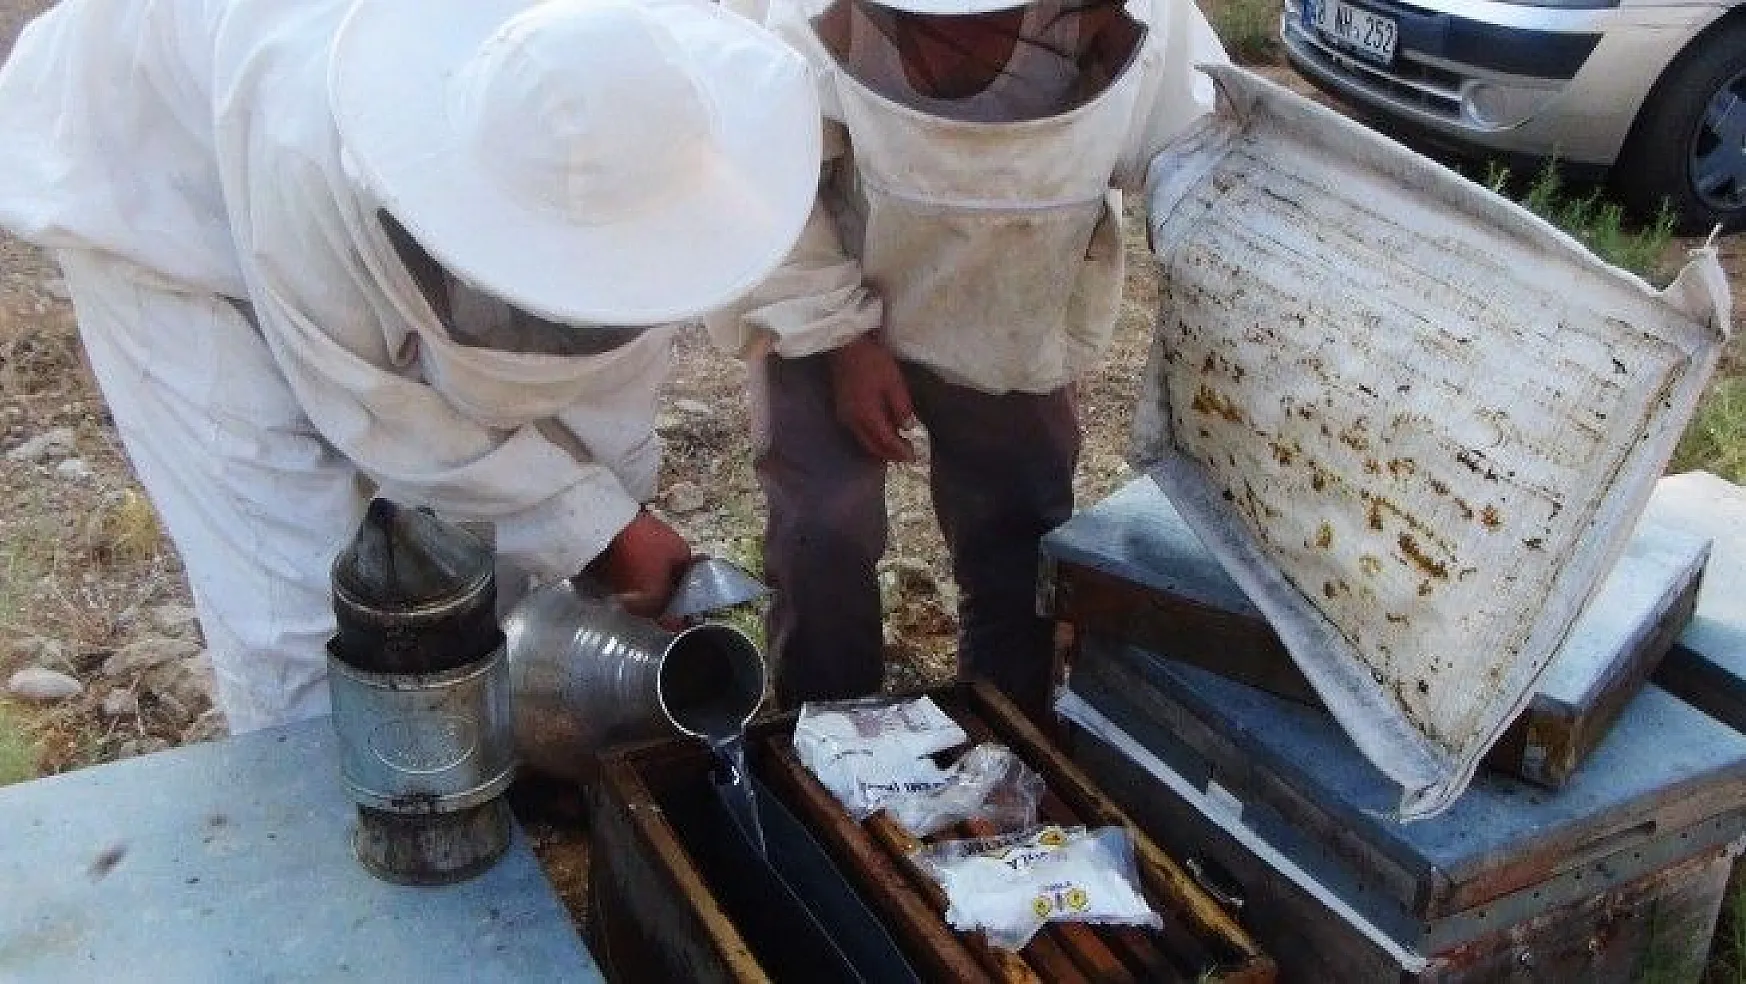 Üreticiler arıların ölmemesi için mücadele veriyor